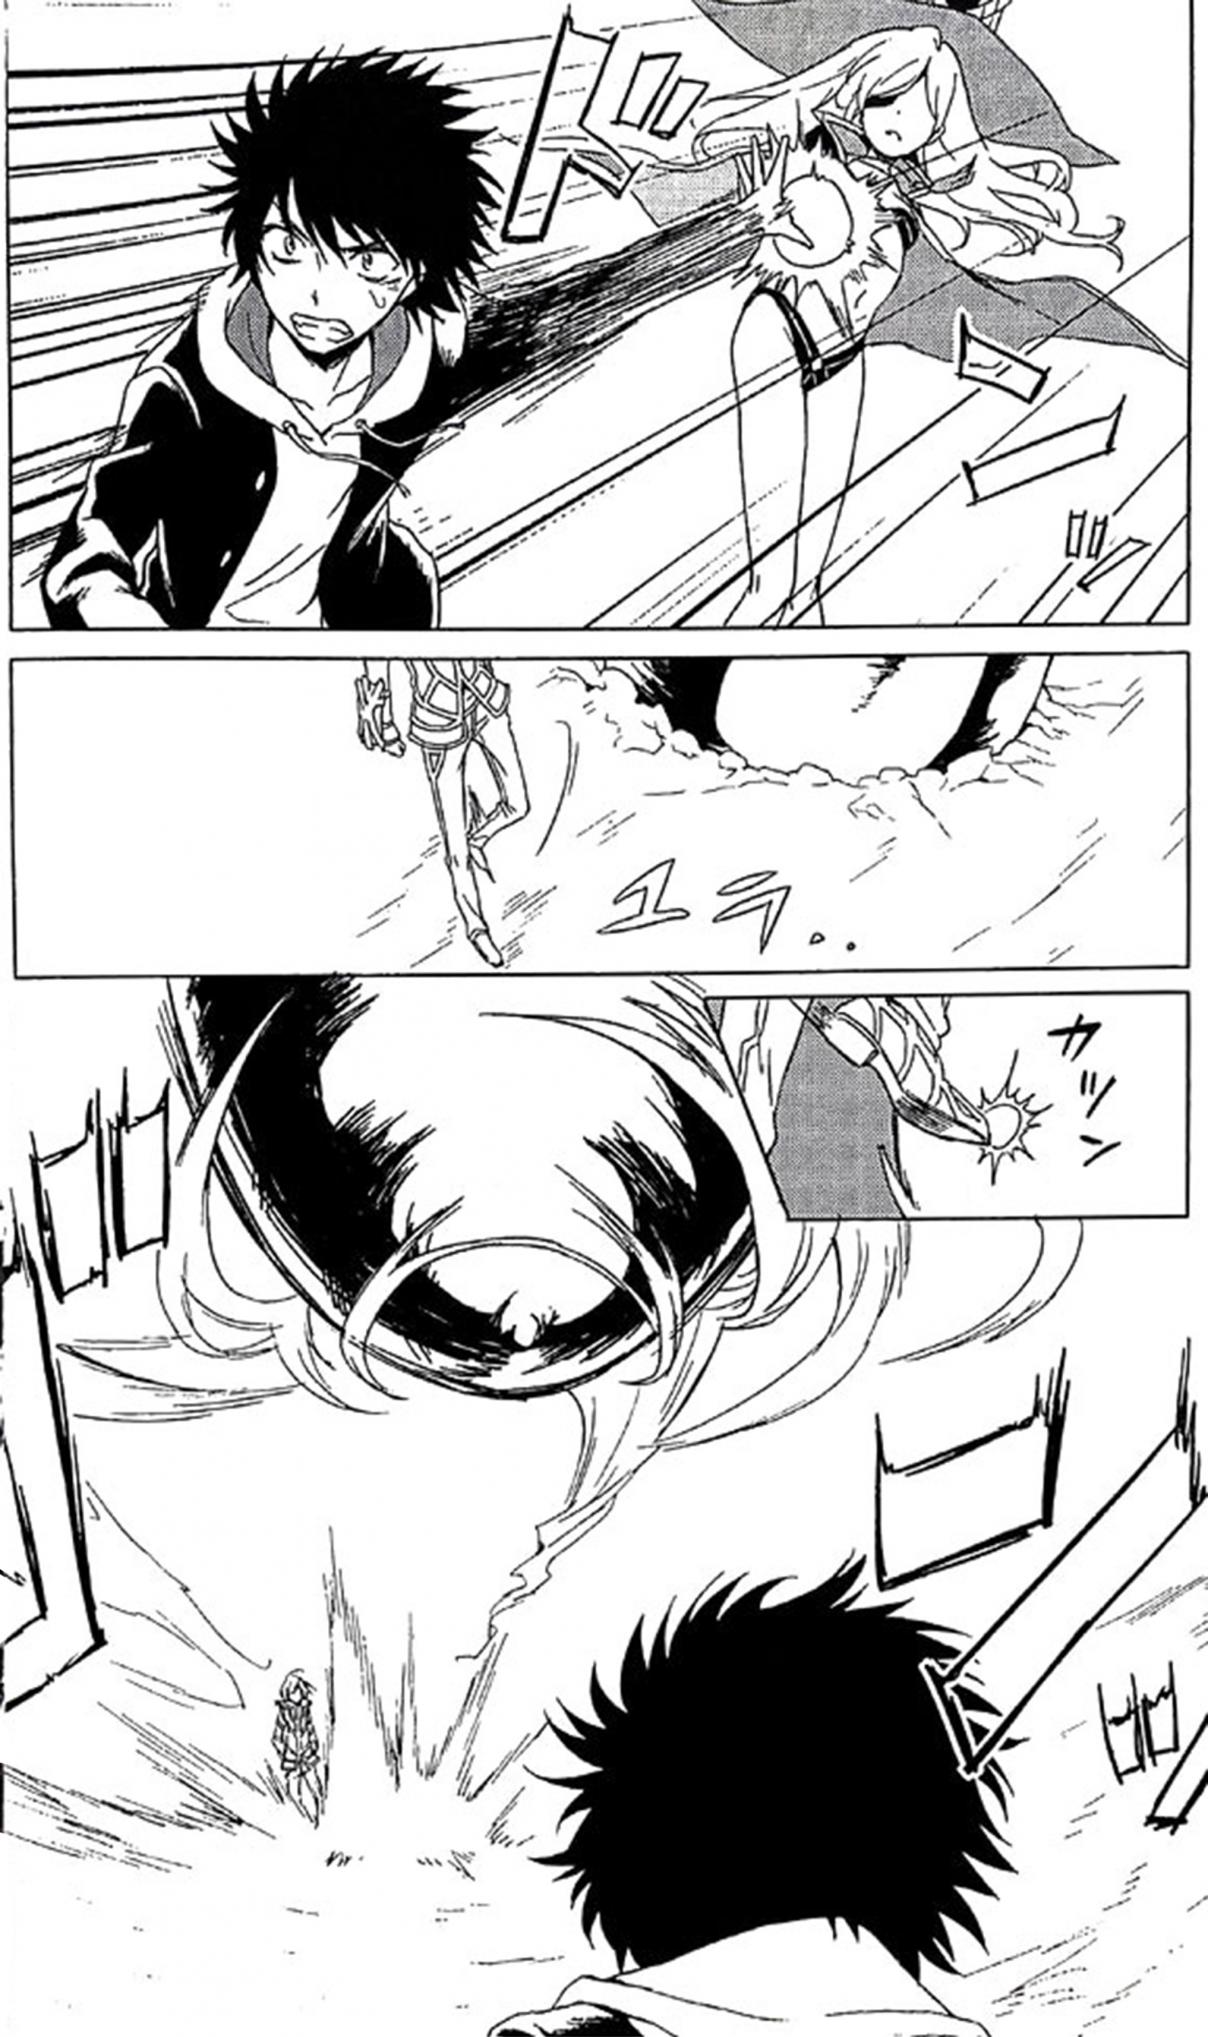 Toaru Majustsu no Index Pigeon Blood: Index New Testament 10 Touma VS Accelerator Round 1 (Doujinshi) Vol. 1 Ch. 1